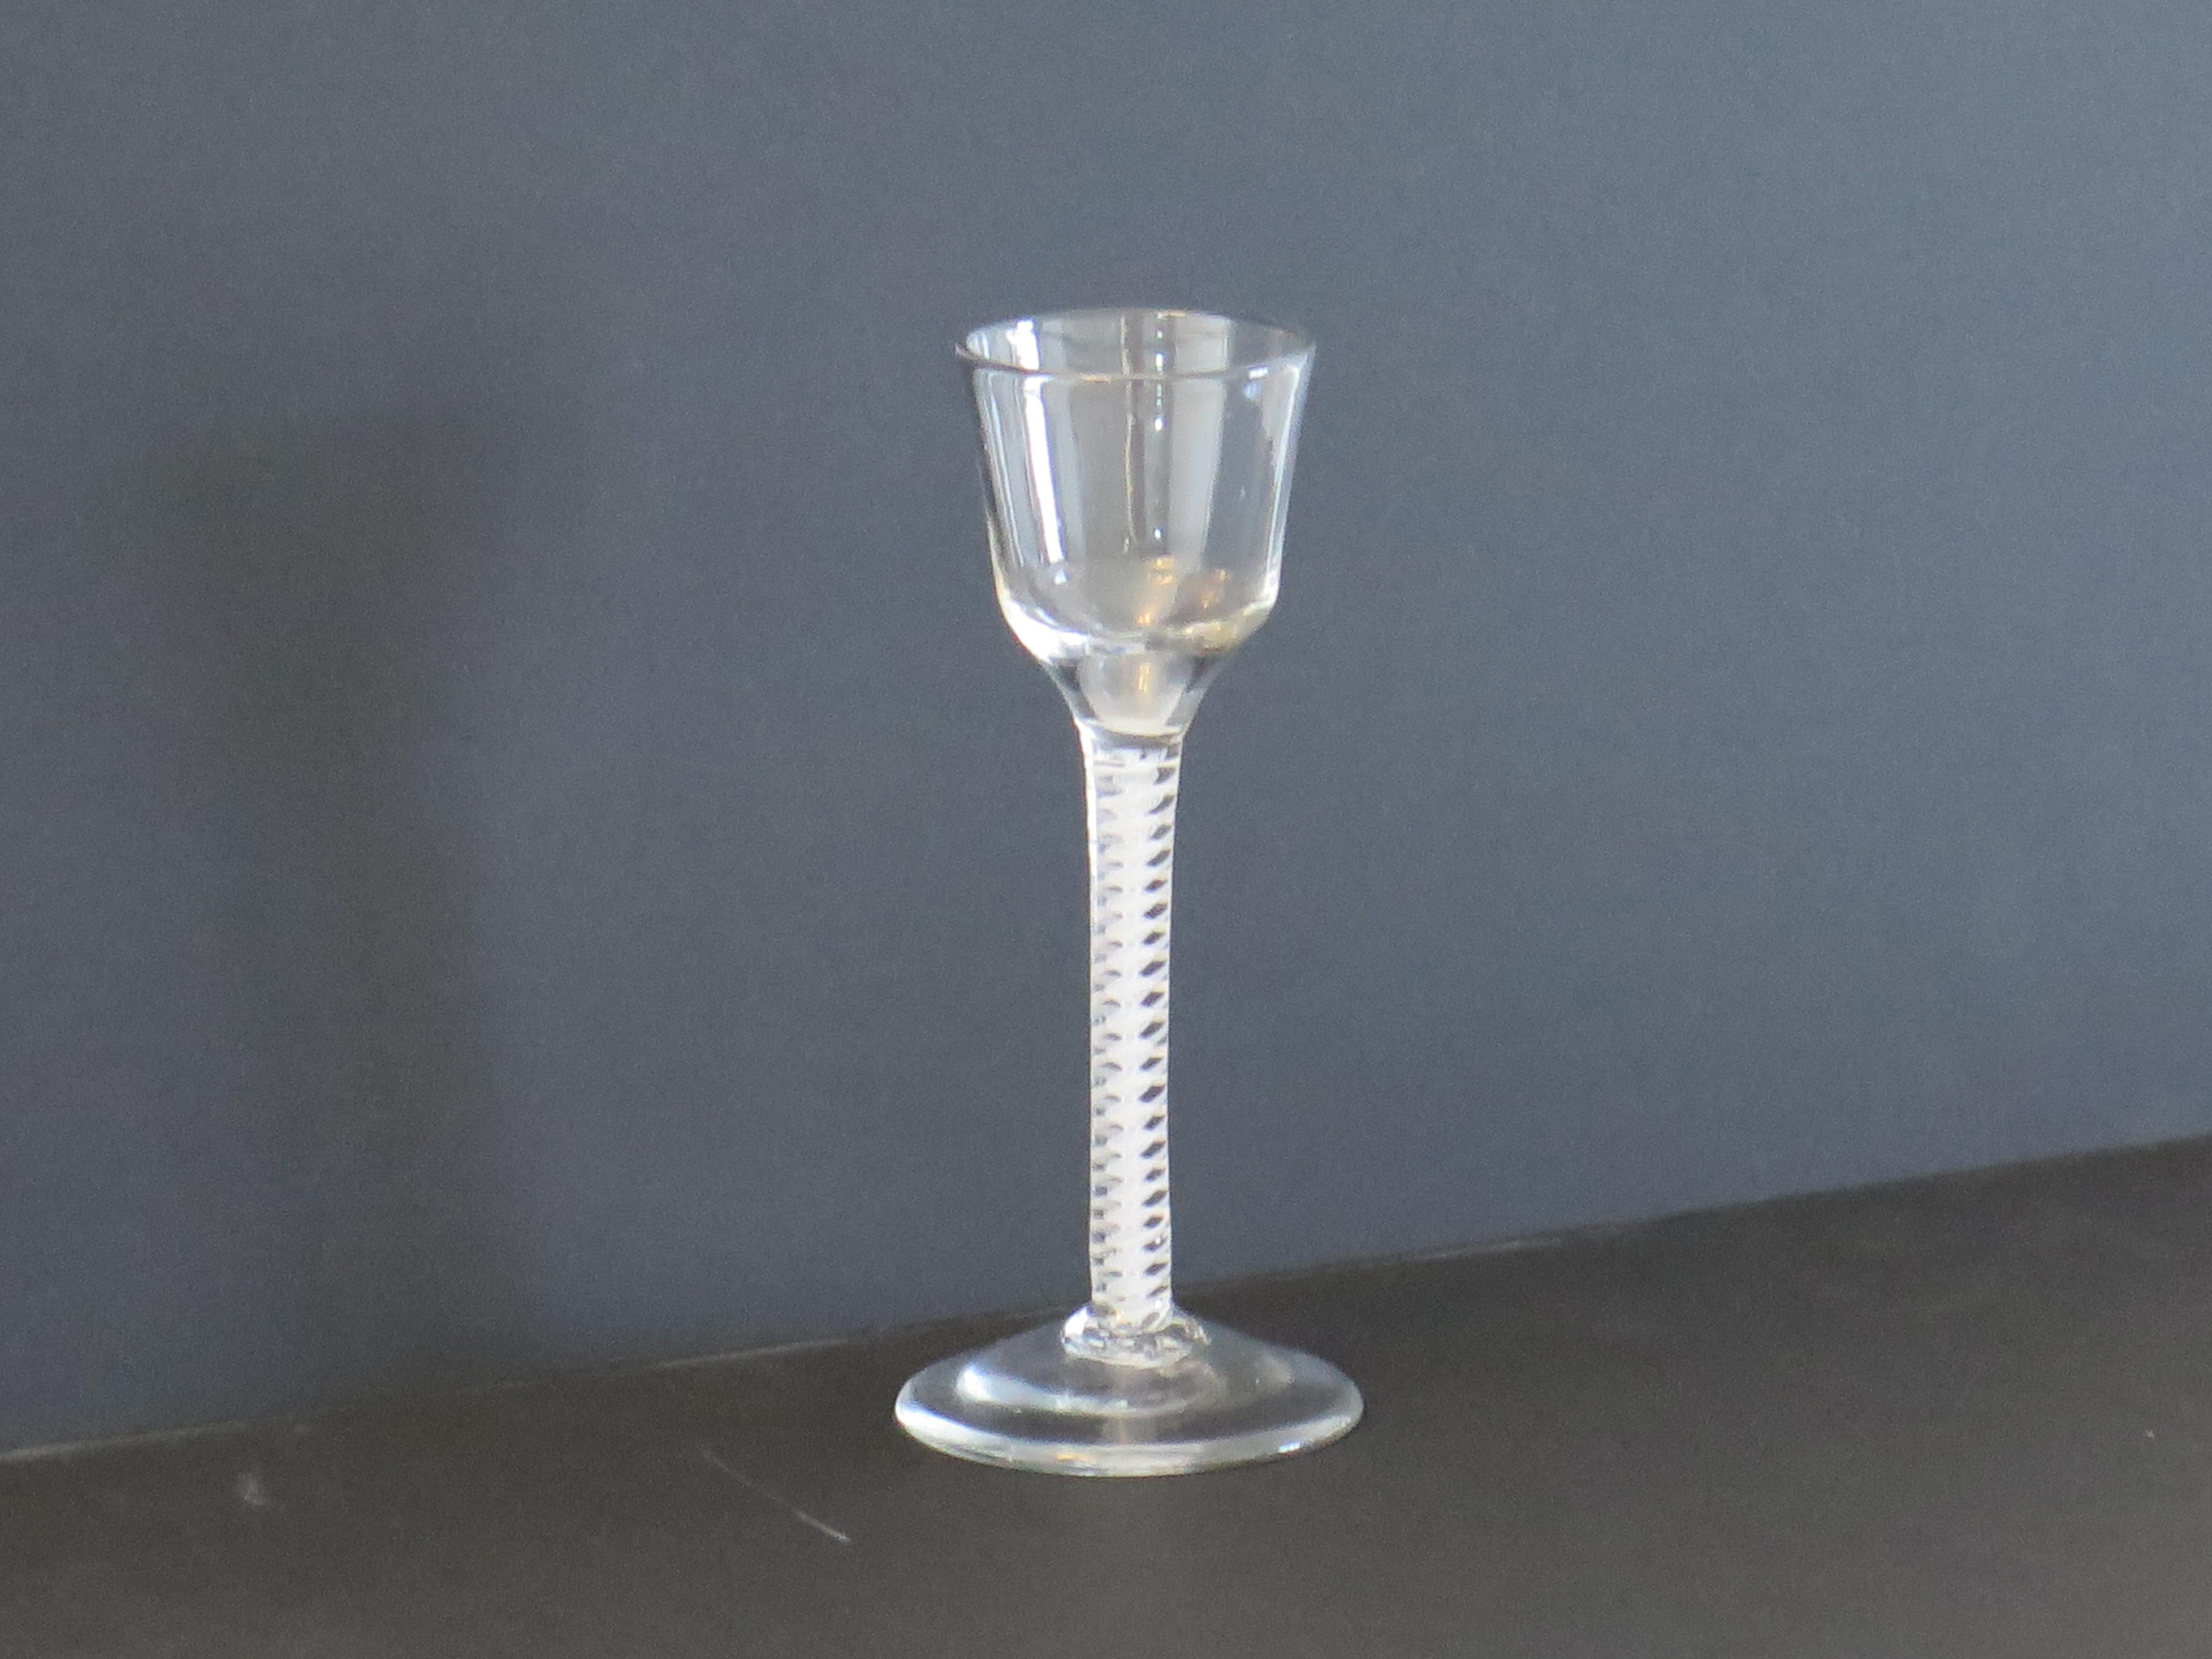 Il s'agit d'un bon verre à eau soufflé à la main, anglais, du milieu du XIXe siècle, avec un pied à double série de torsades opaques (DSOT), datant du milieu du XVIIIe siècle, vers 1765.

Ces verres à vin géorgiens soufflés à la main sont très